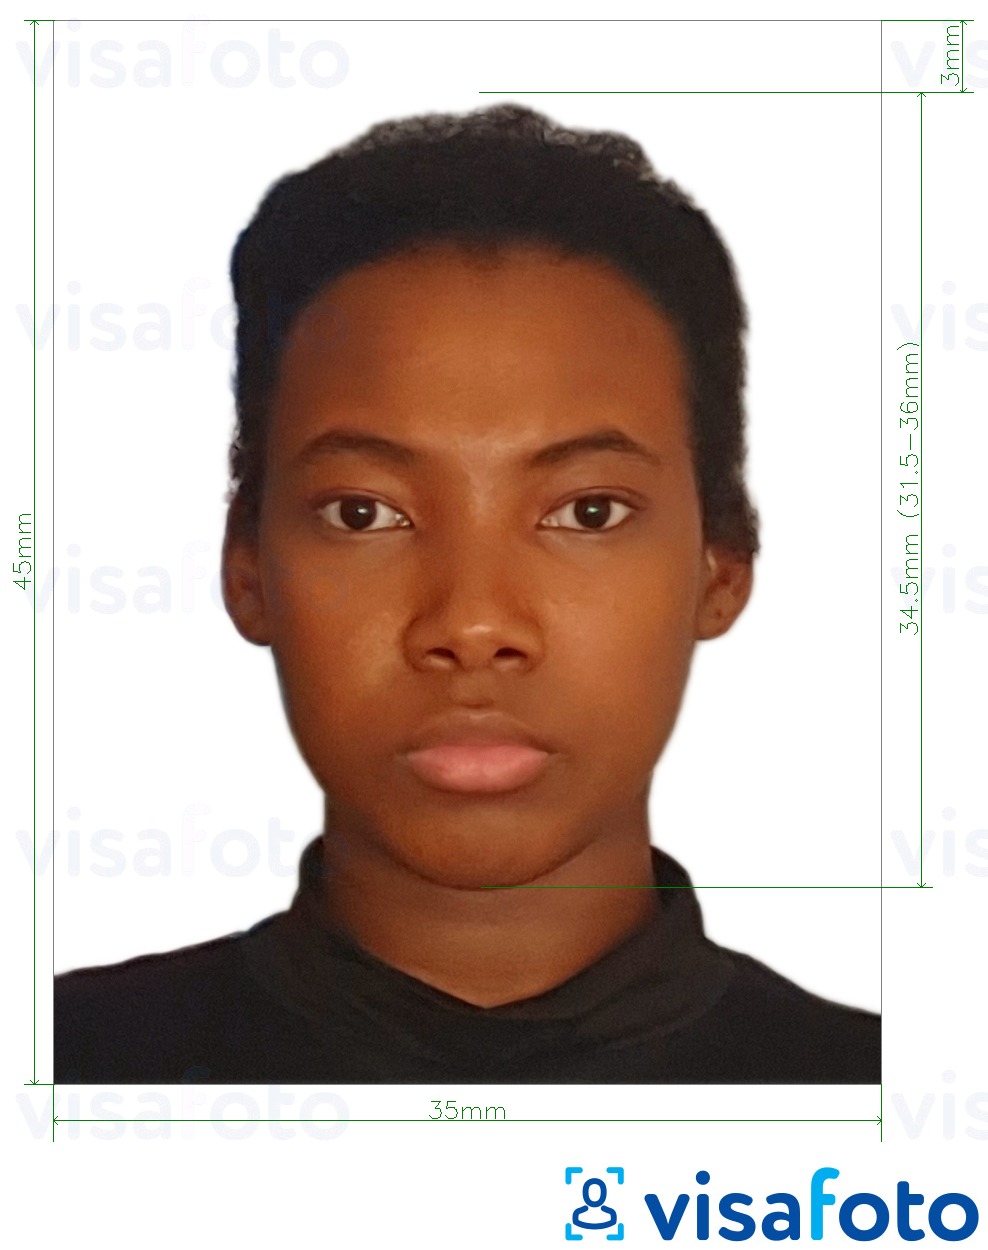 مع مواصفات الحجم الدقيقة جواز سفر ملاوي 4.5 × 3.5 سم (45 × 35 مم) مثال على صورة لـ 